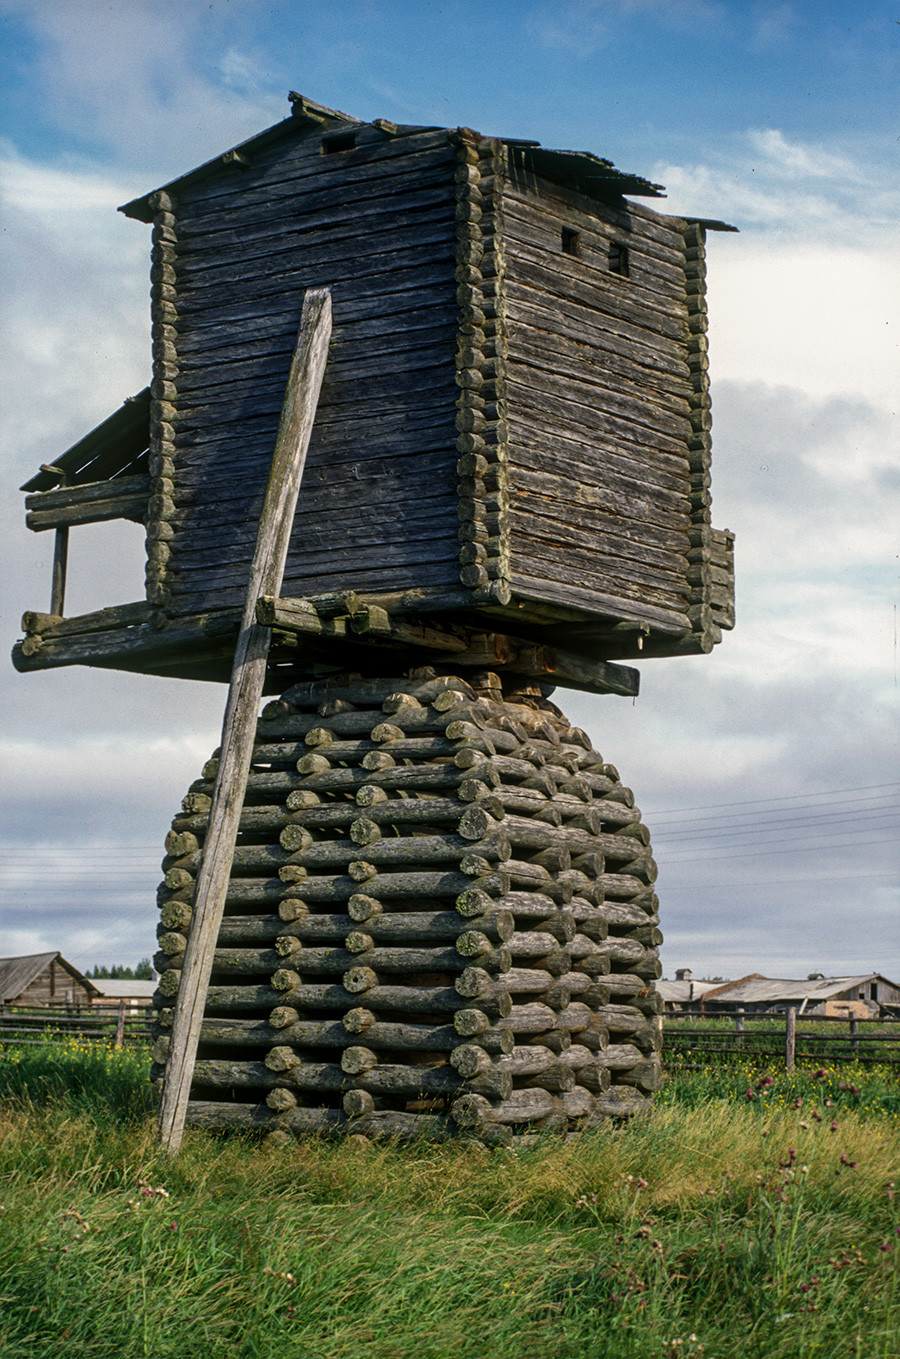 Kimzha. Post windmill. August 2, 2000